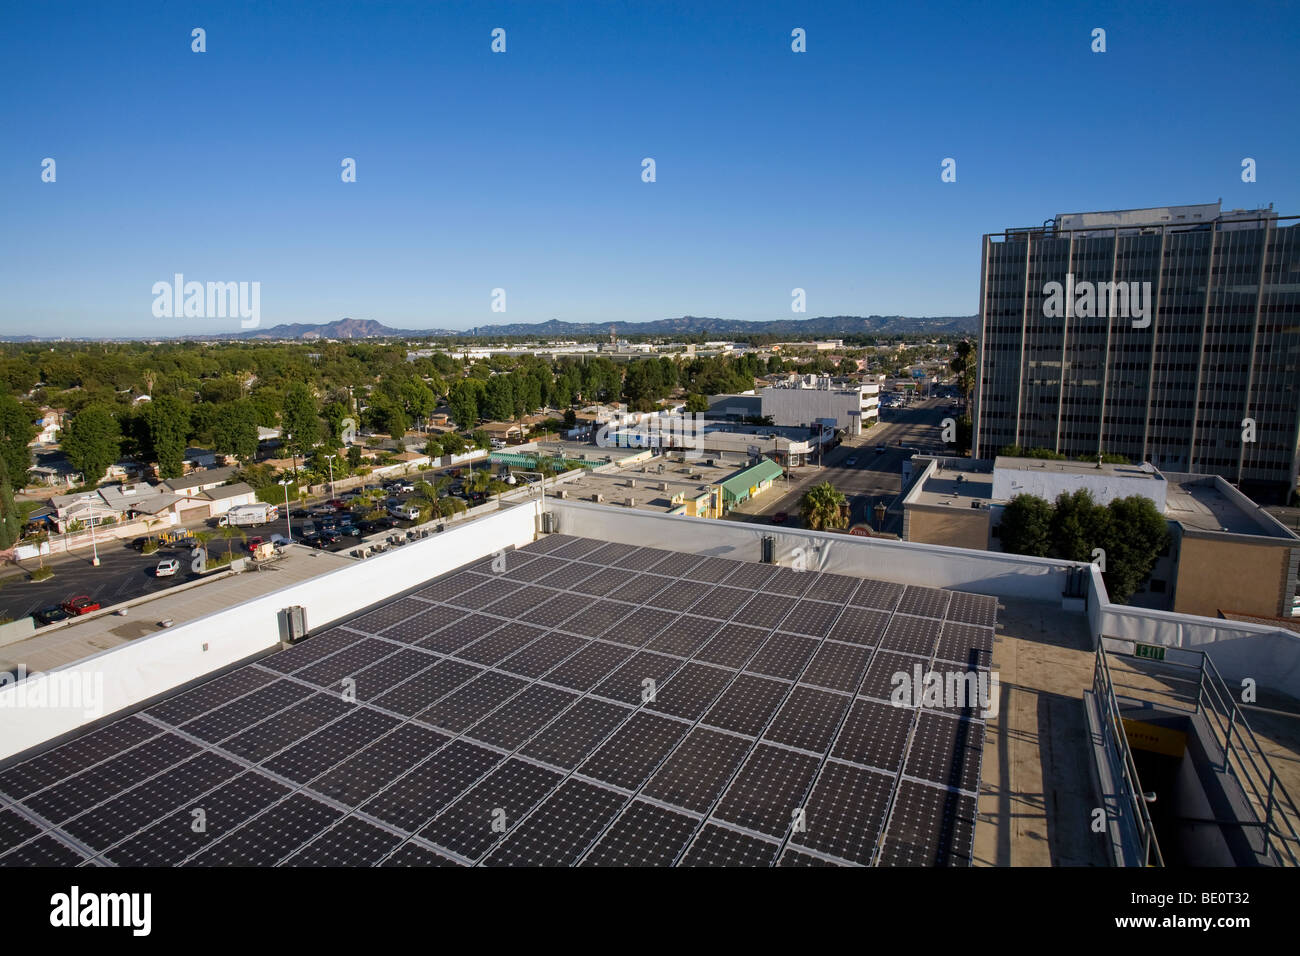 Array sul tetto dell'edificio per uffici nella città di Panorama, Valle di San Fernando, Los Angeles, California, Stati Uniti d'America Foto Stock